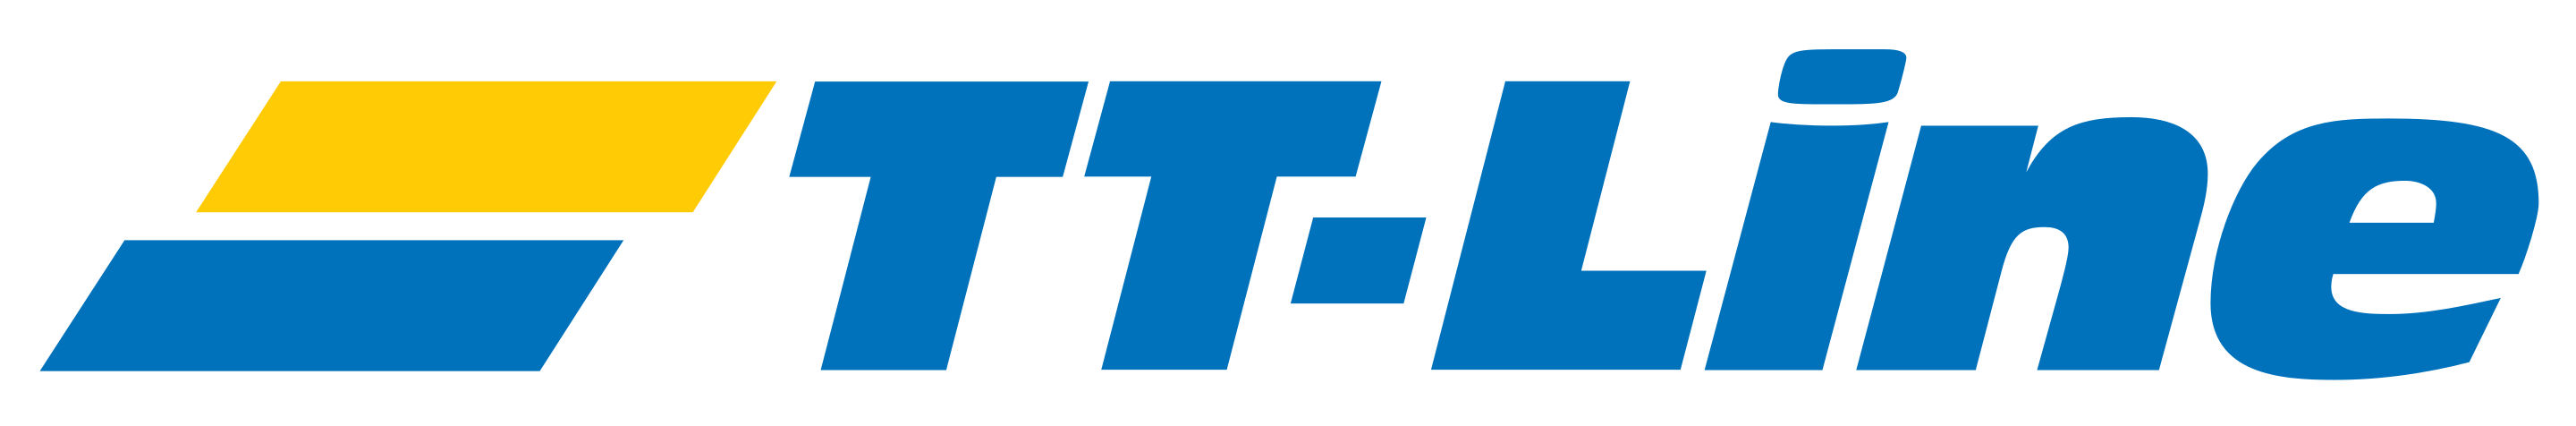 TT-Line logotips